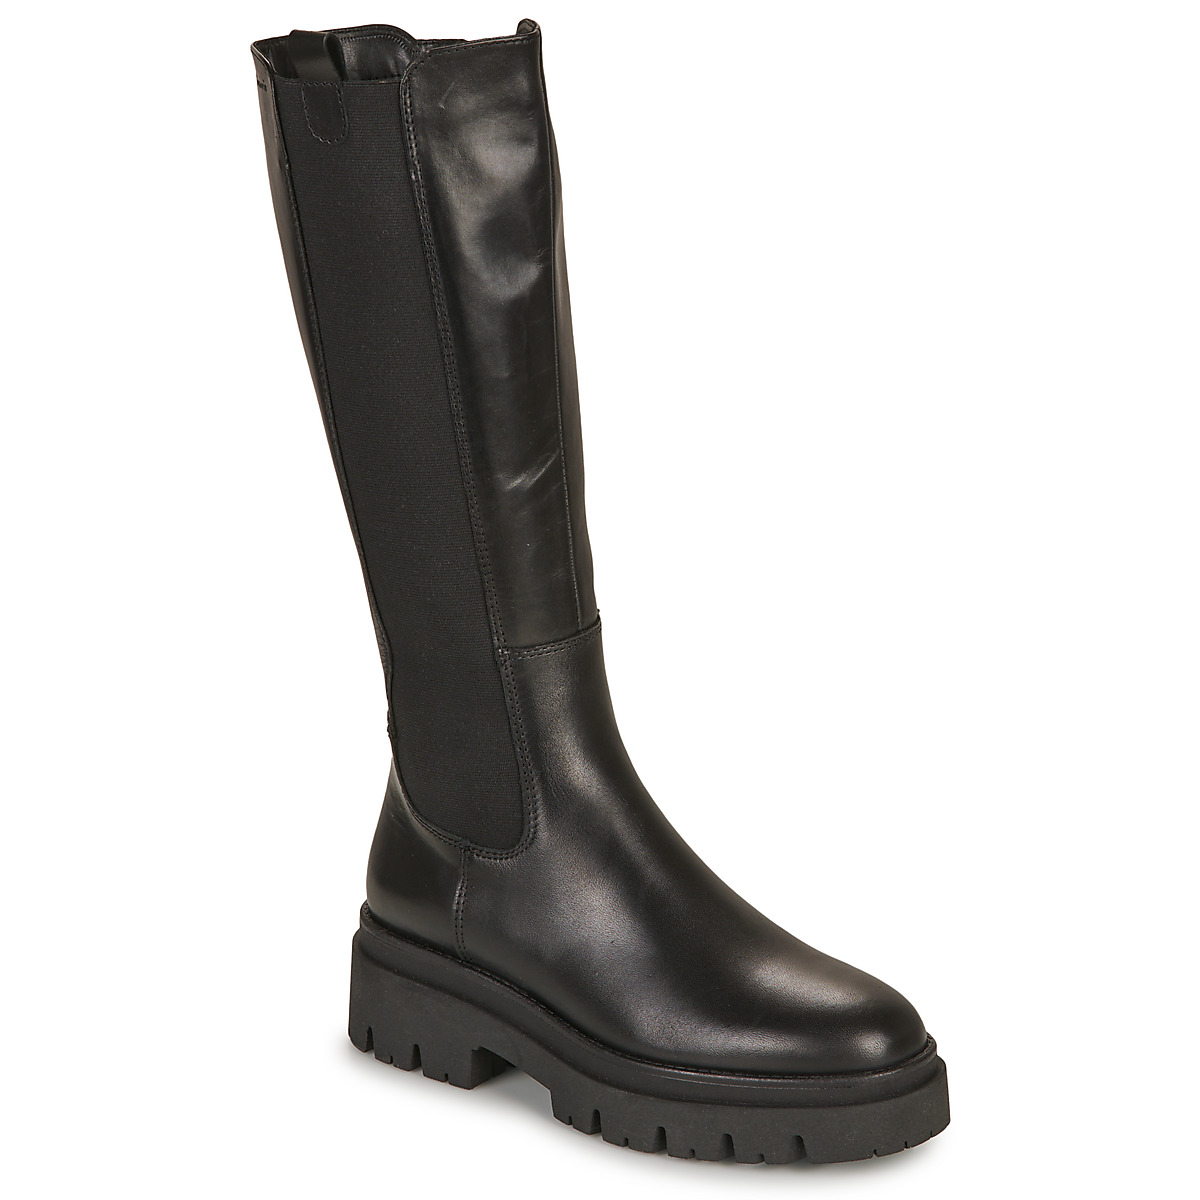 tamaris  25608-001  women's high boots in black